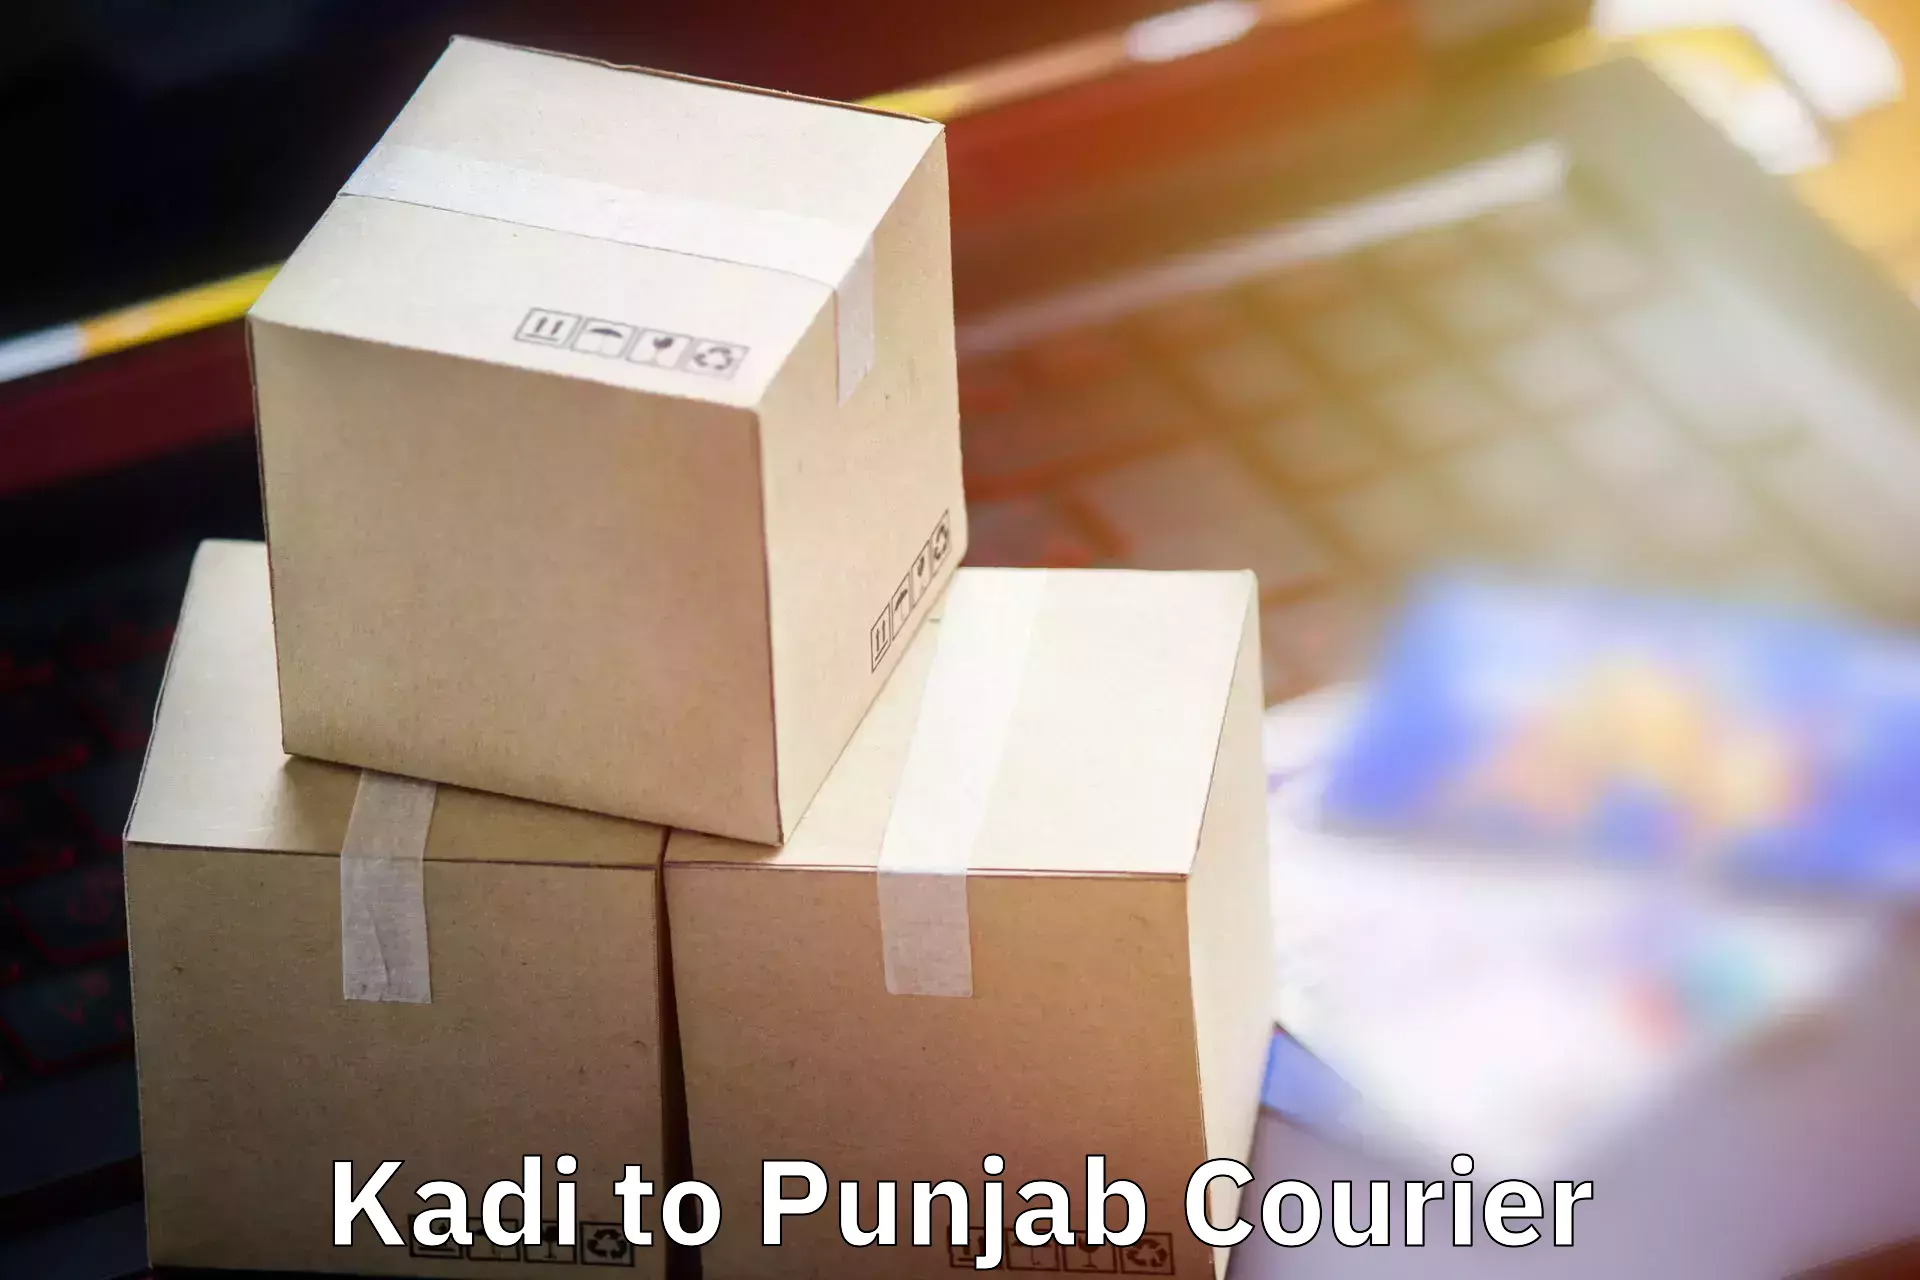 Hassle-free luggage shipping Kadi to Central University of Punjab Bathinda